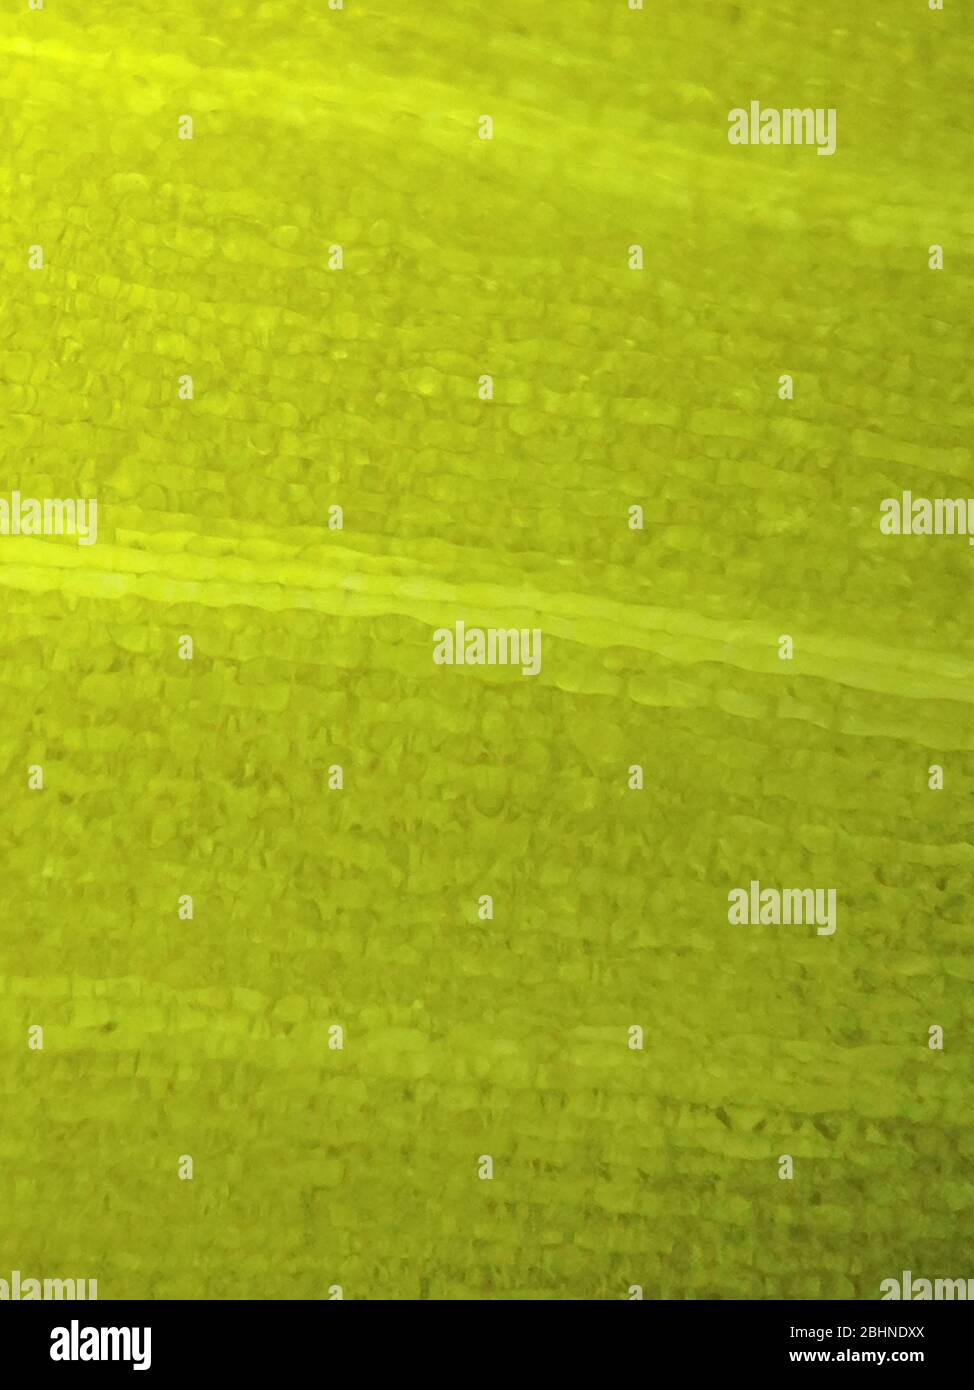 vue microscopique de la surface de la lame montrant les cellules végétales Banque D'Images